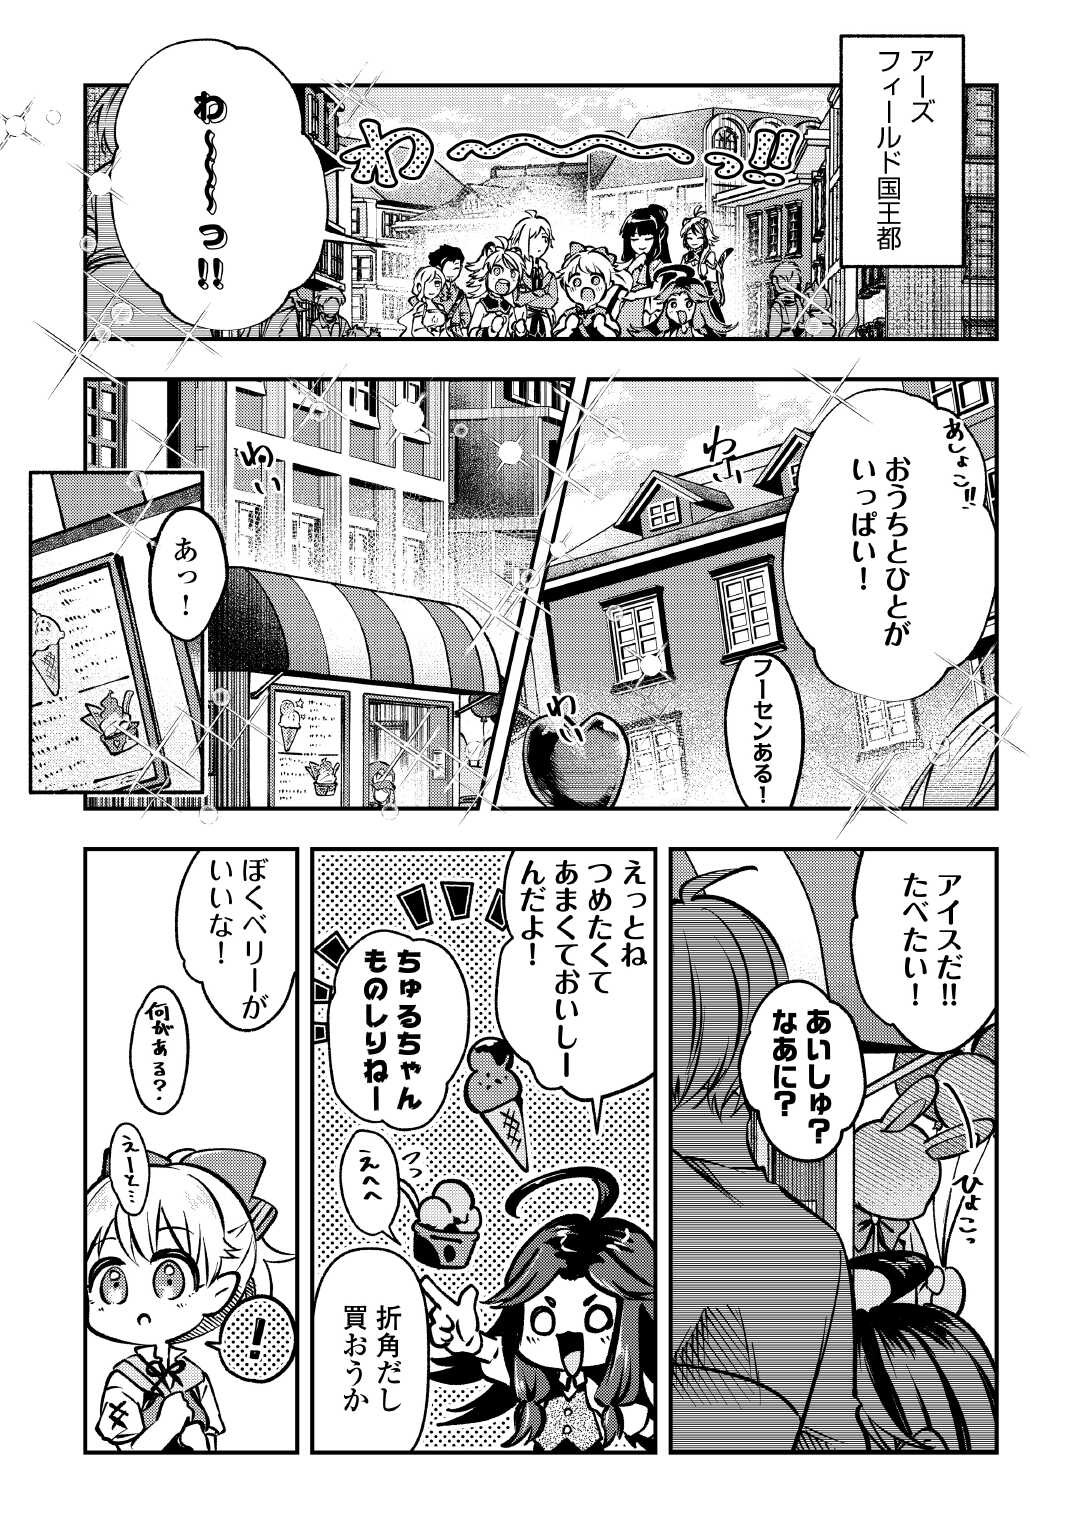 Osanago wa Saikyou no Tamer da to Kizuiteimasen! - Chapter 13 - Page 9